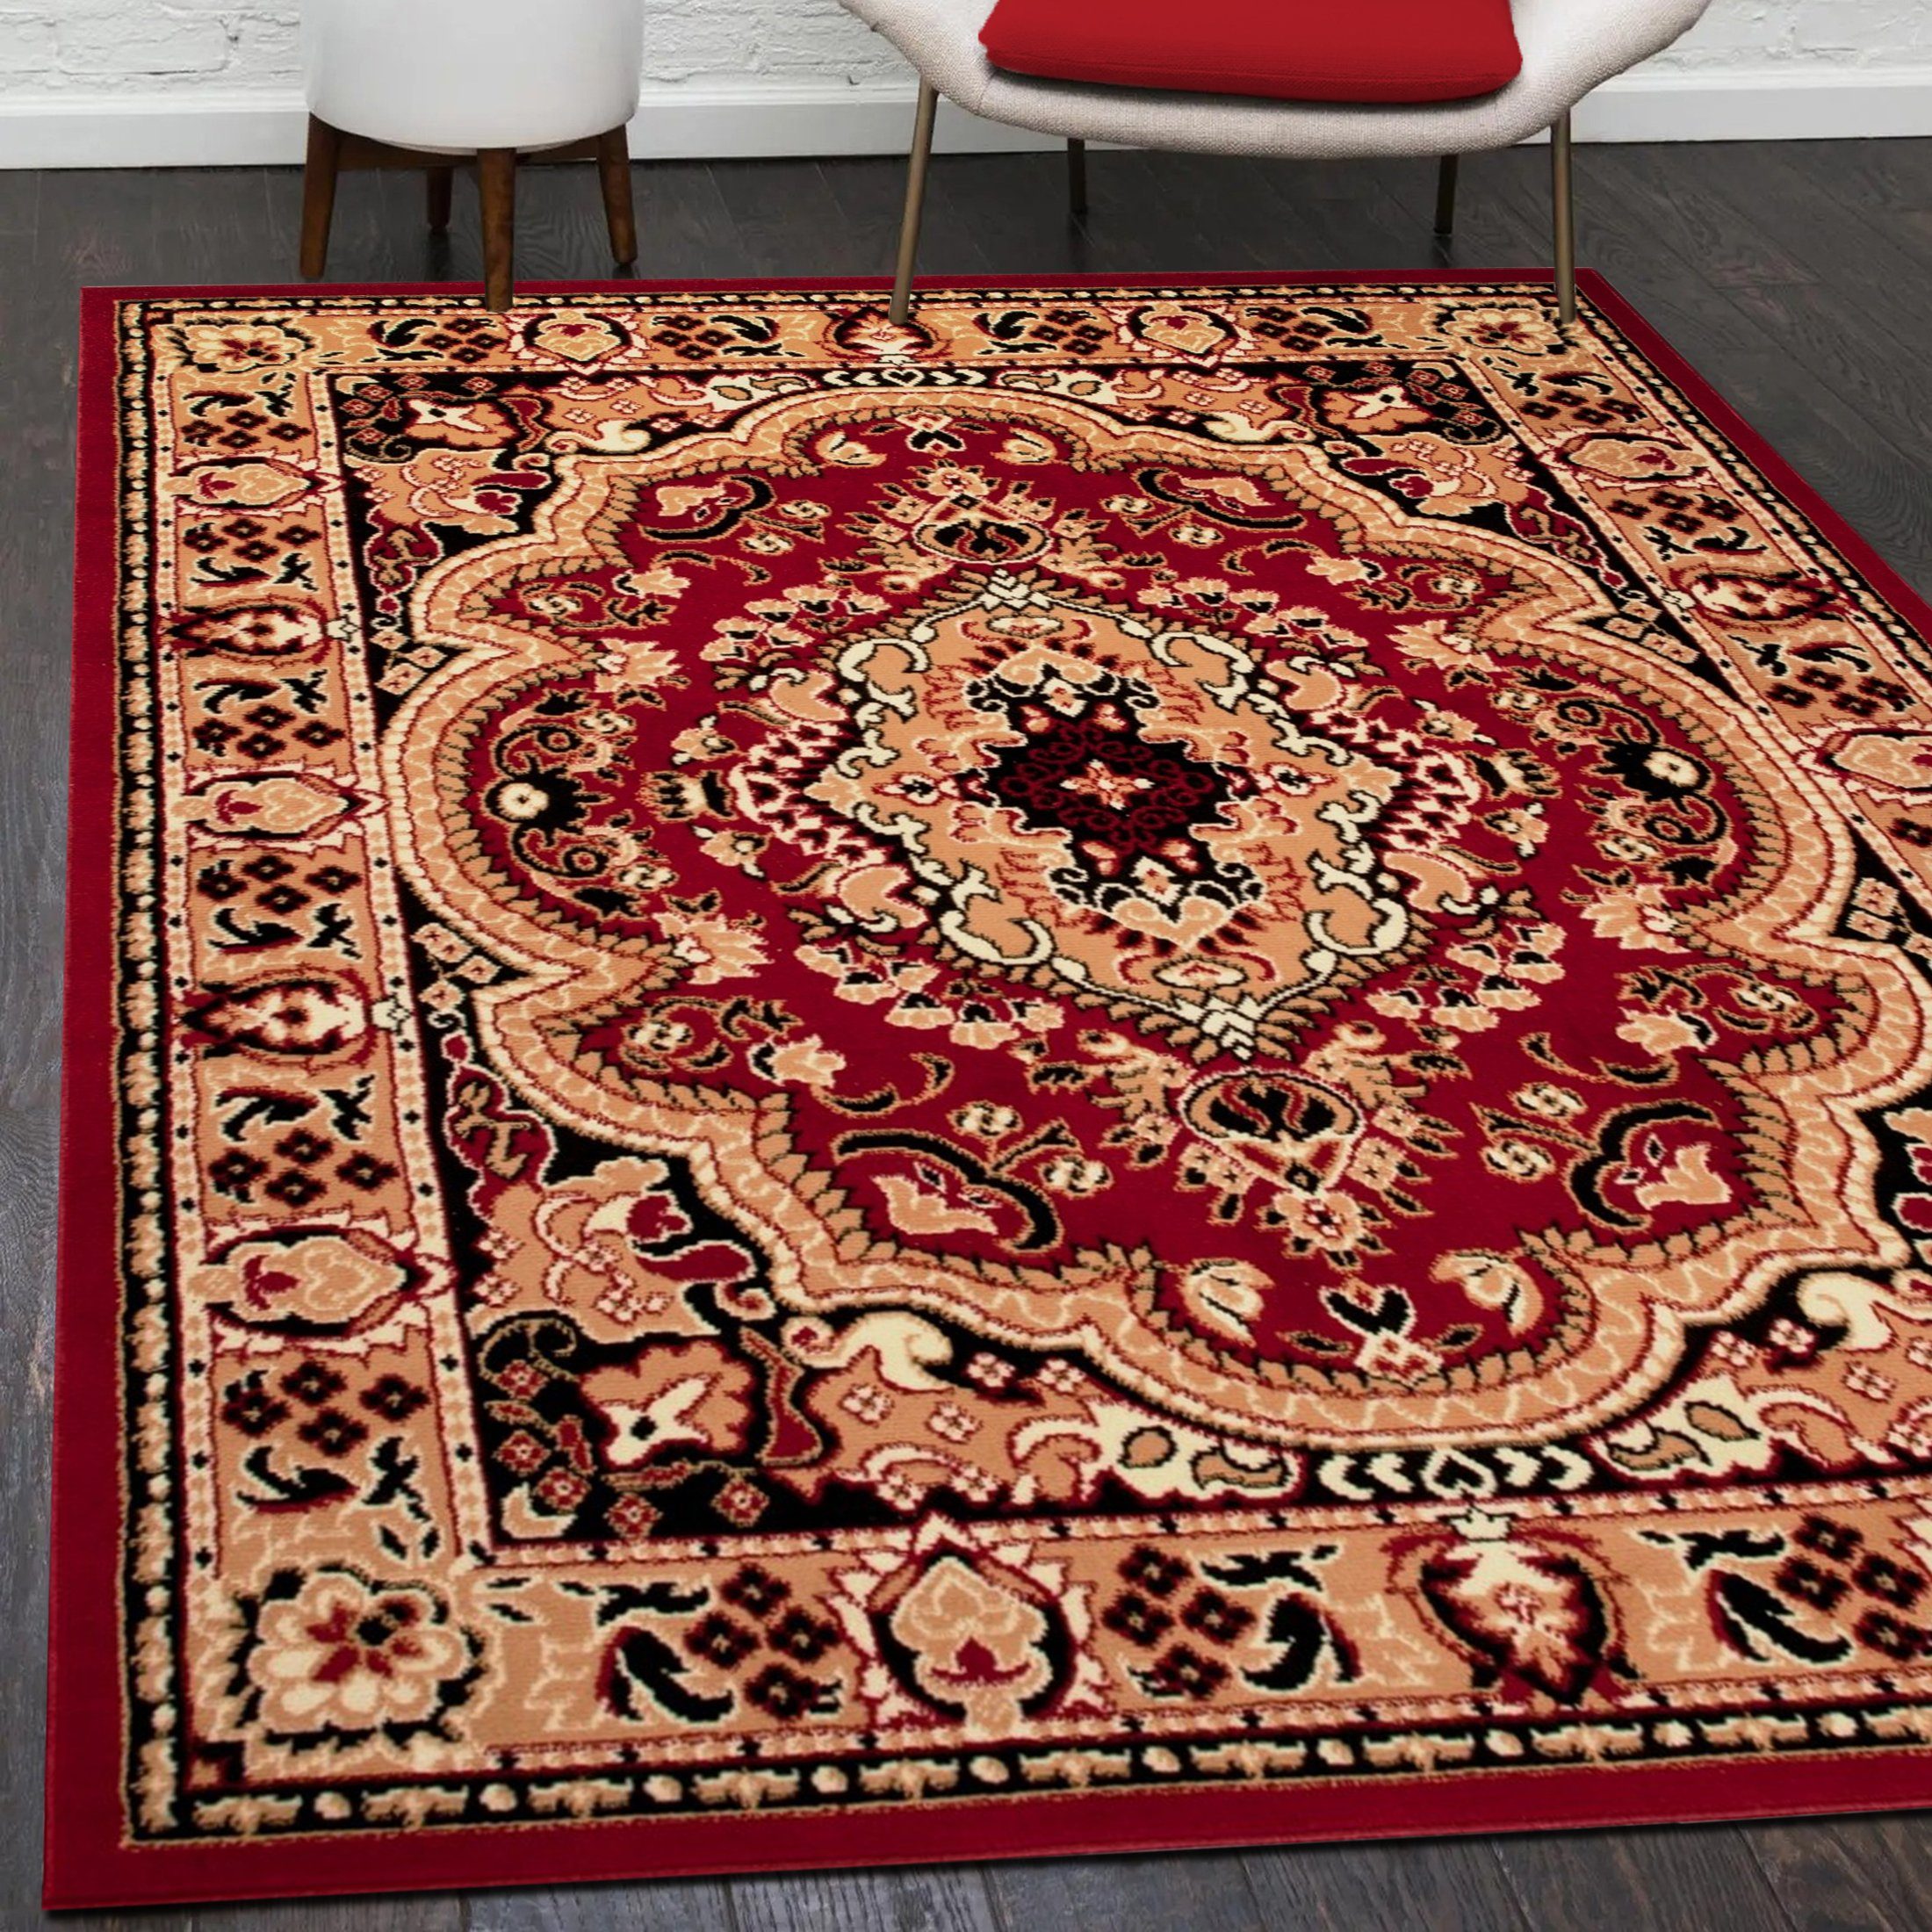 Orientteppich Orientalisch Vintage Teppich Kurzflor Wohnzimmerteppich Rot, Mazovia, 100 x 200 cm, Fußbodenheizung, Allergiker geeignet, Farbecht, Pflegeleicht Rot / E951A-RED